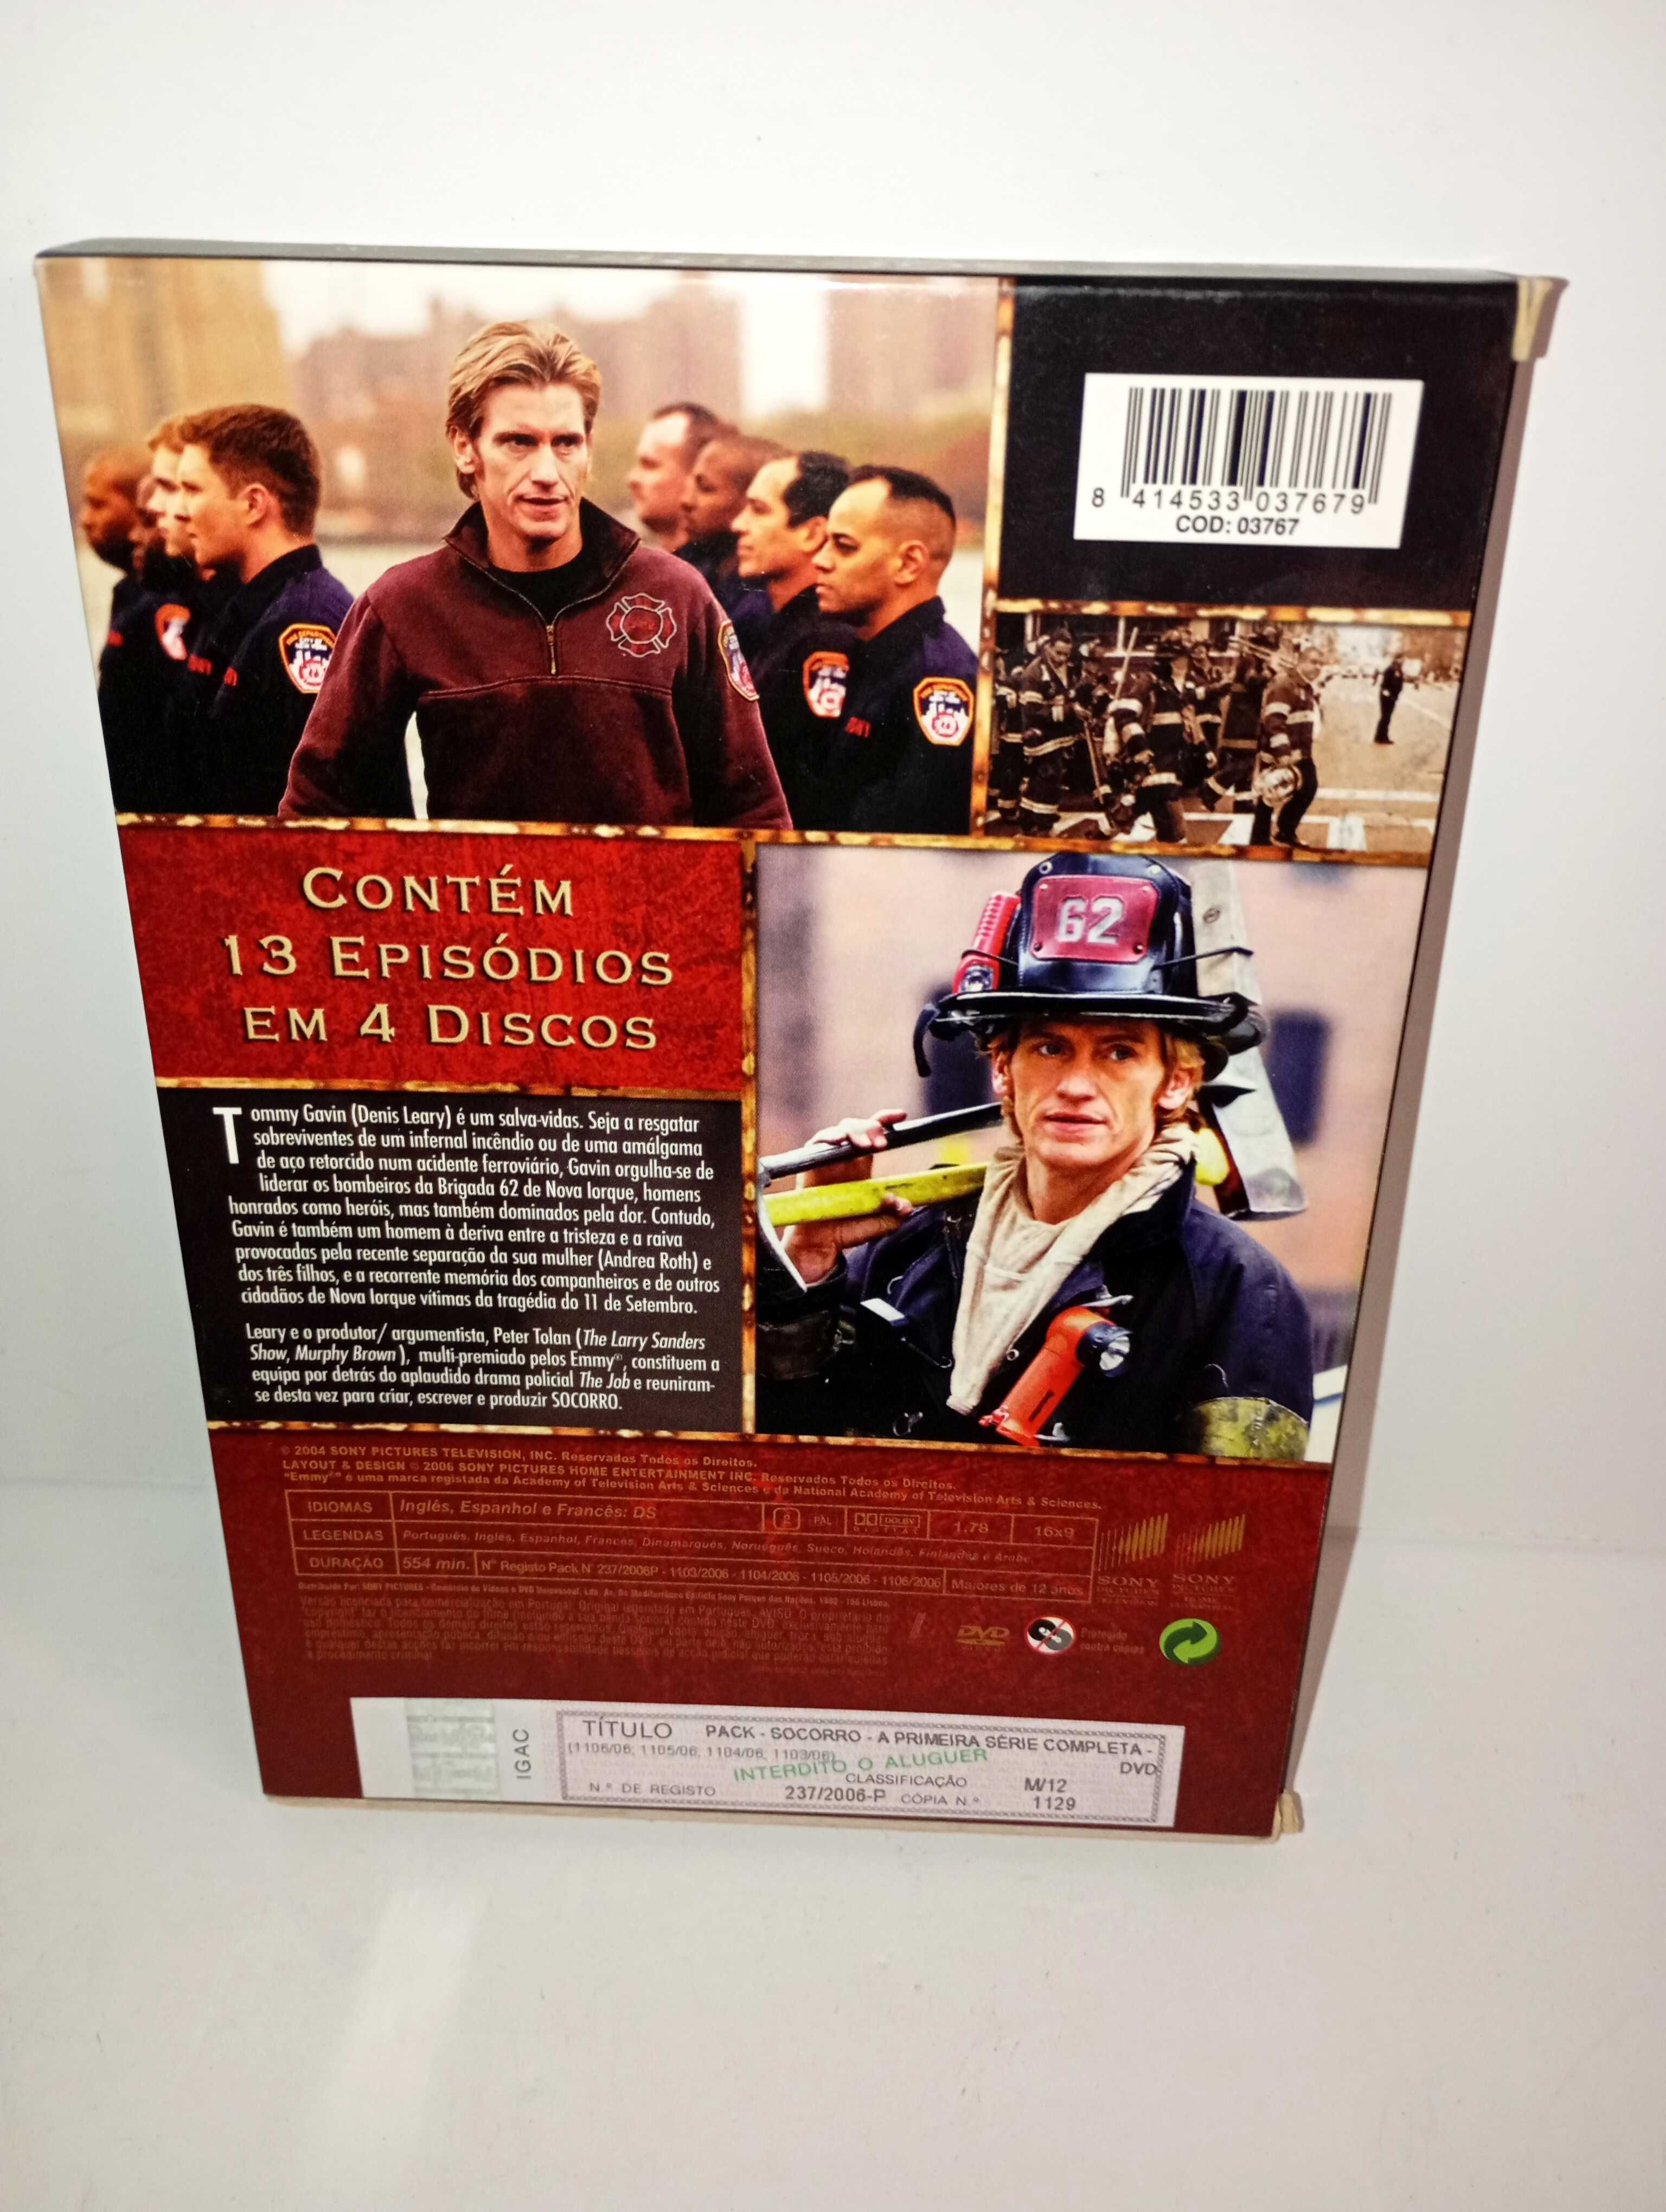 Socorro - 1ª Série completa - DVD Original